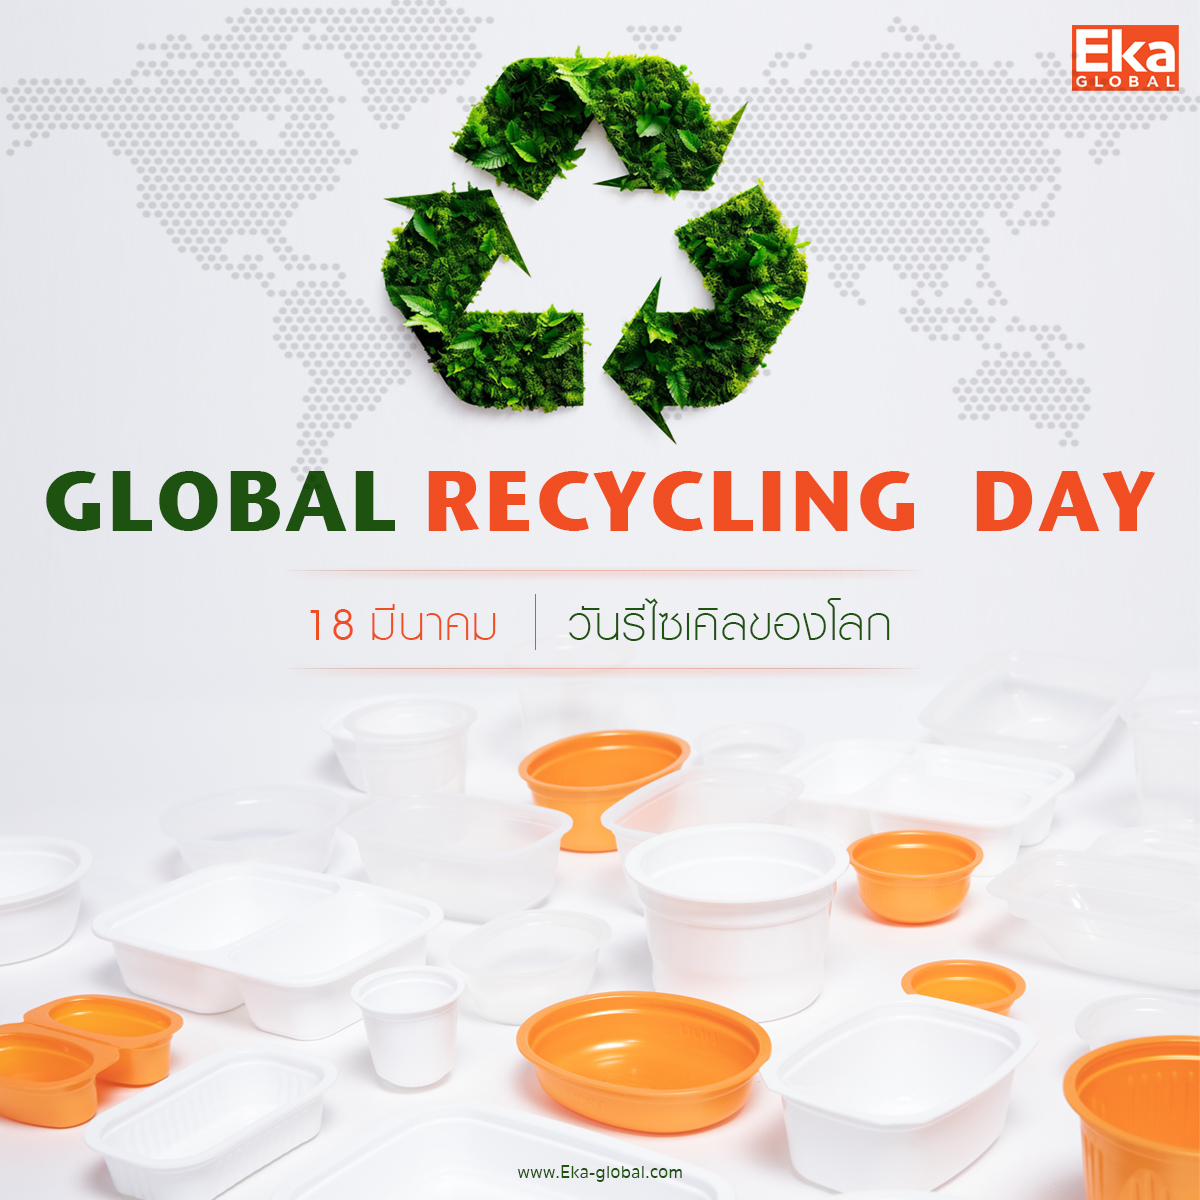 #วันรีไซเคิลของโลก Global Recycling Day  18 มีนาคม ของทุกปี เลือกใช้บรรจุภัณฑ์อาหาร #LongevityPackaging'  ของ #EkaGlobal ที่ตอบโจทย์ให้ธุรกิจอาหารของคุณเข้าถึงผู้บริโภคมากขึ้น ด้วยคุณสมบัติพิเศษ และให้ความสำคัญกับสิ่งแวดล้อมควบคู่ไปกับอาหารที่ปลอดภัย #รีไซเคิล ได้ 100%